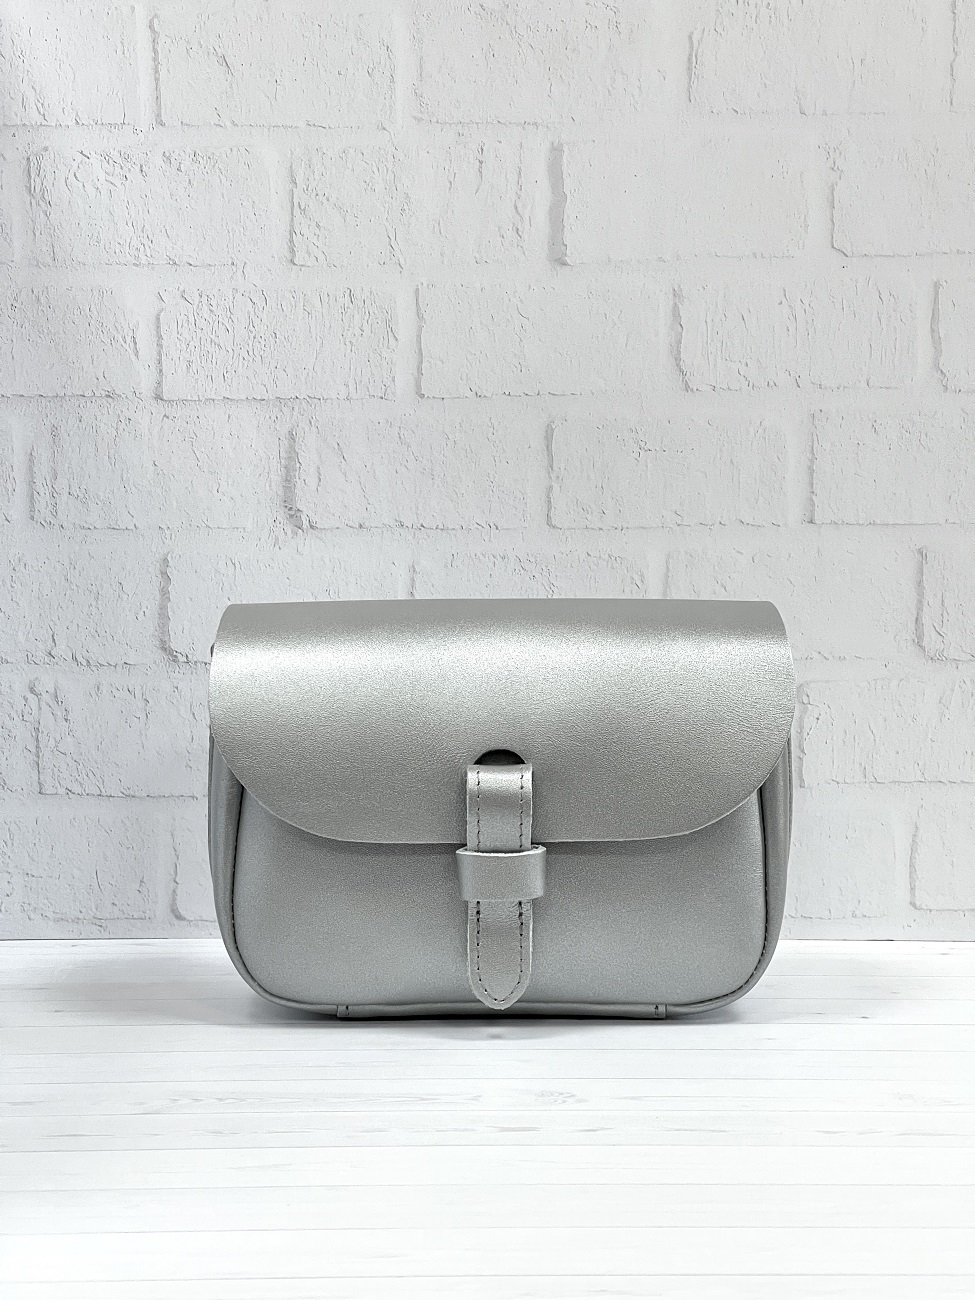 Женская поясная сумка из натуральной кожи серебристая A016 silver mini